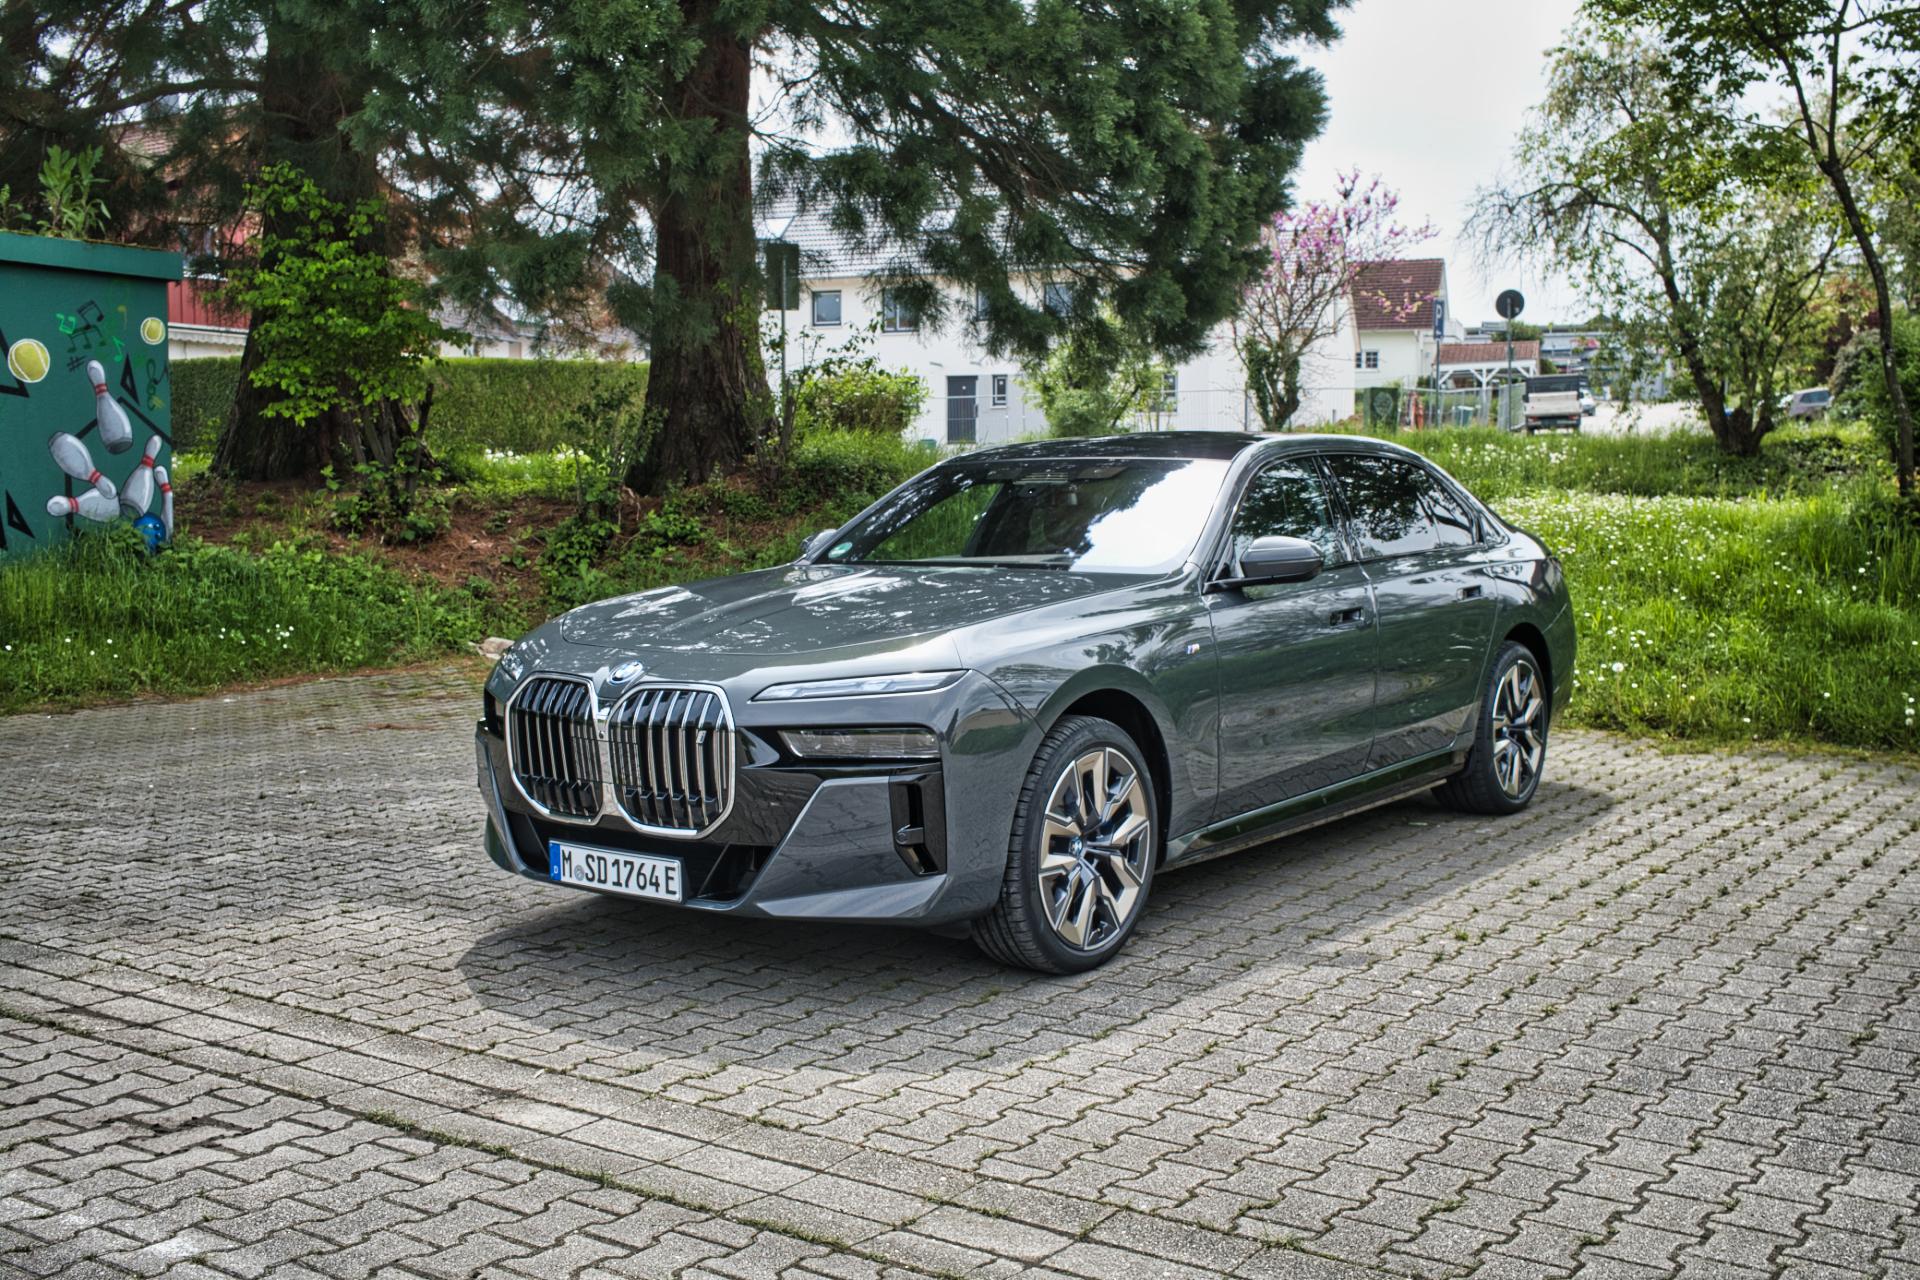 BMW i7: Test, Eindrücke & Erfahrungen aus dem Alltag